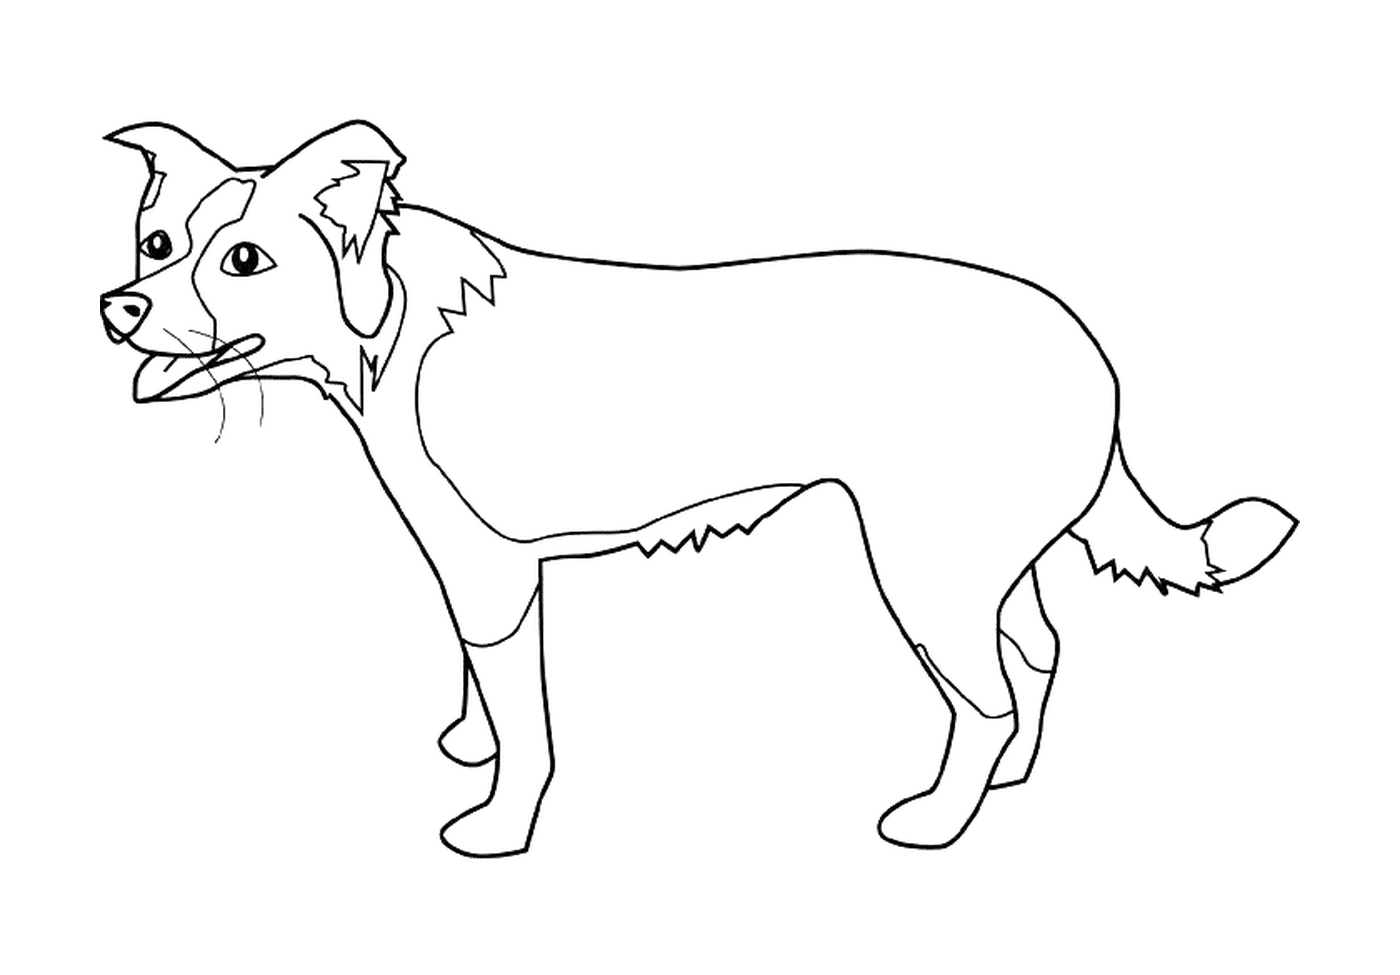  Die Kontur eines Hundes, der auf seinen vier Beinen steht 